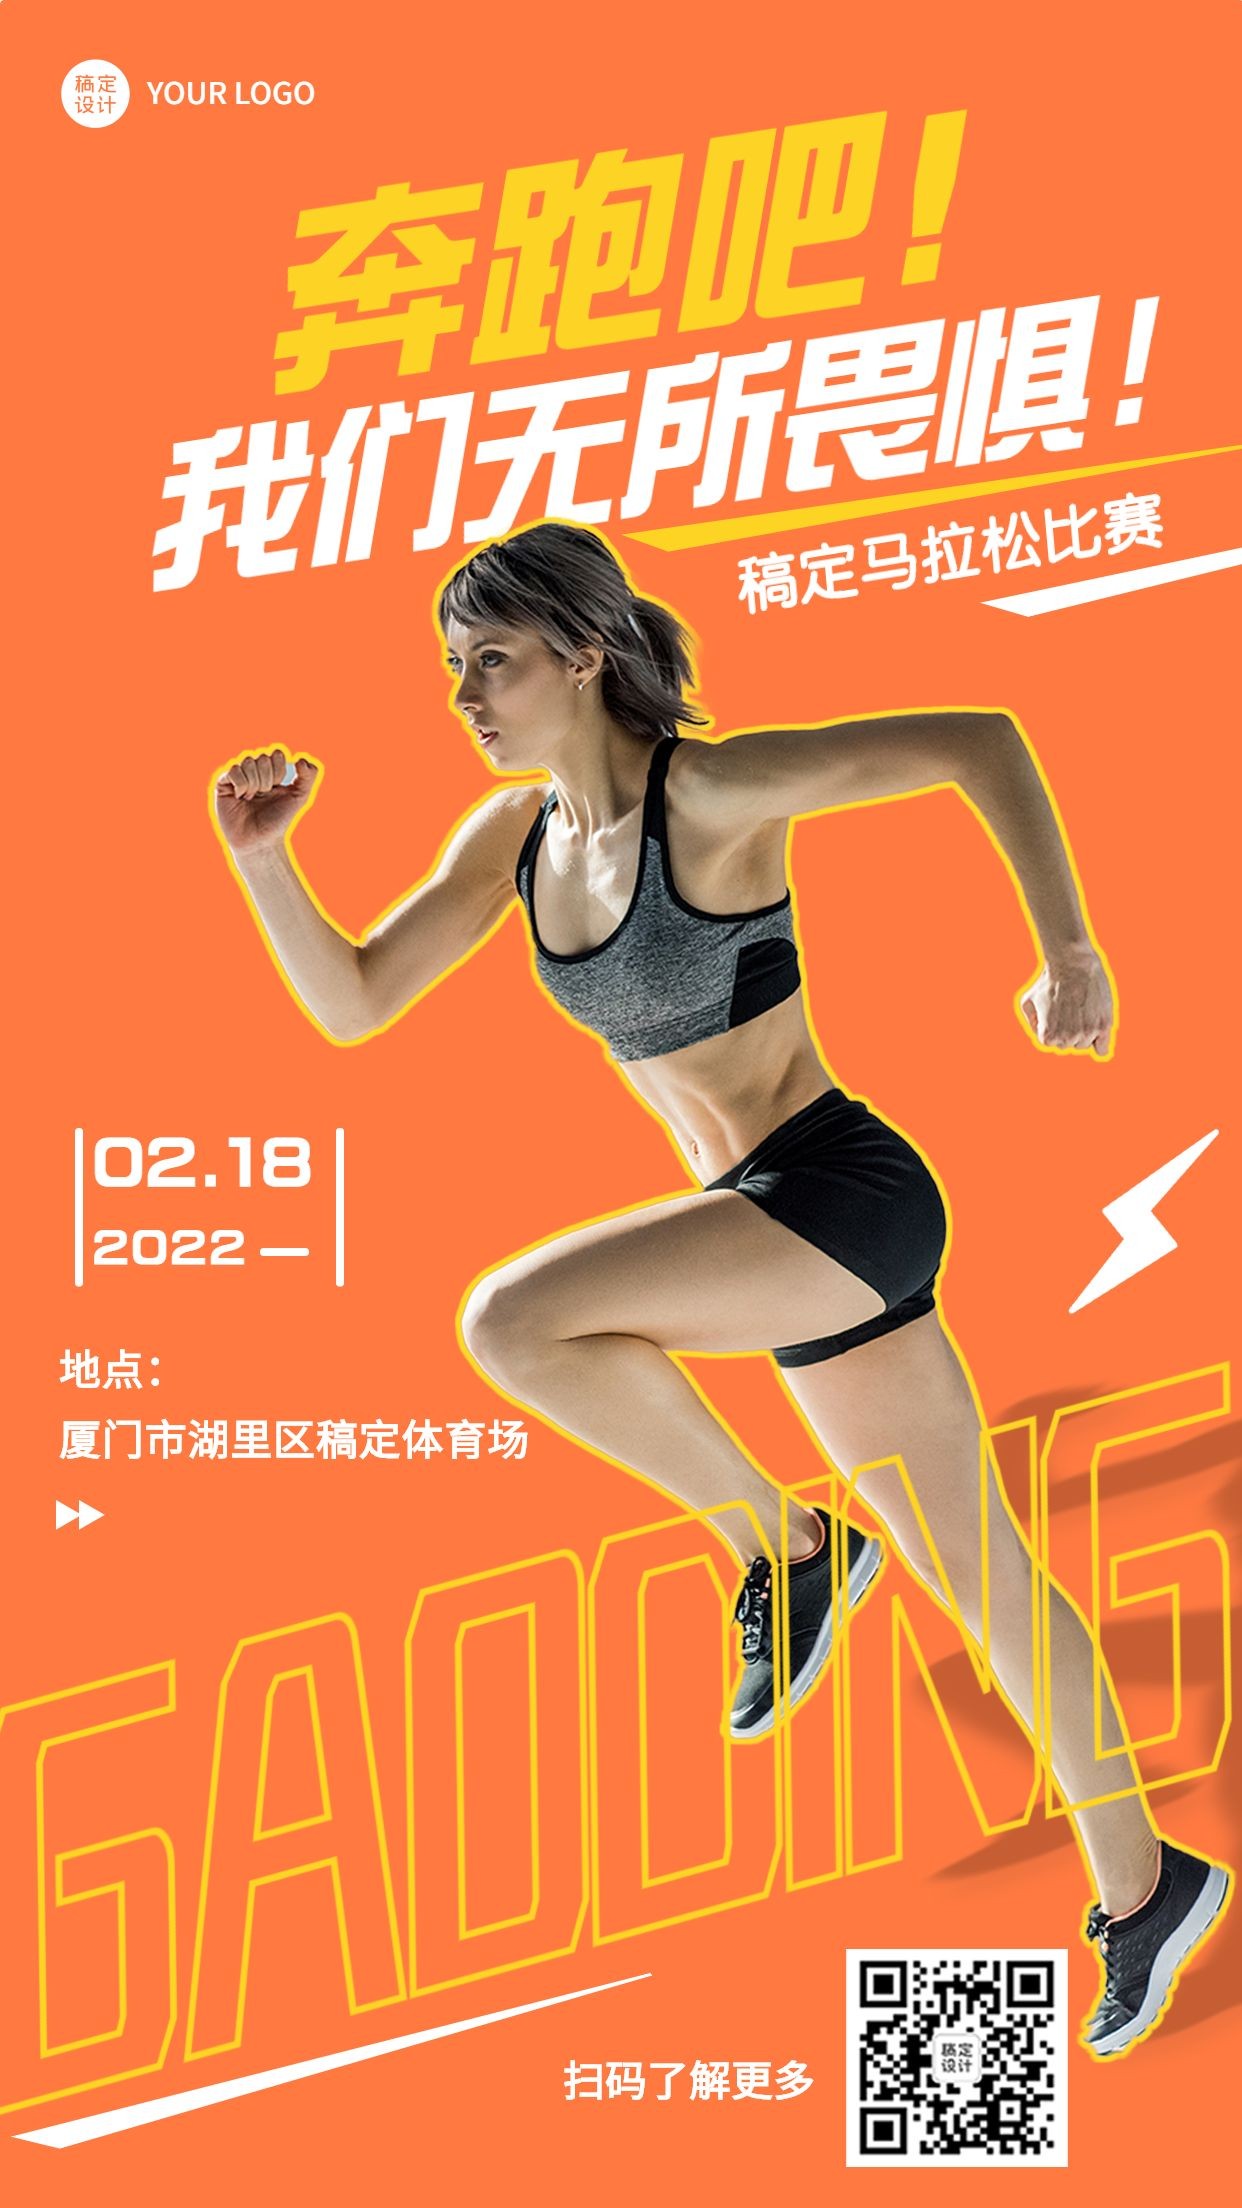 马拉松运动比赛宣传海报预览效果